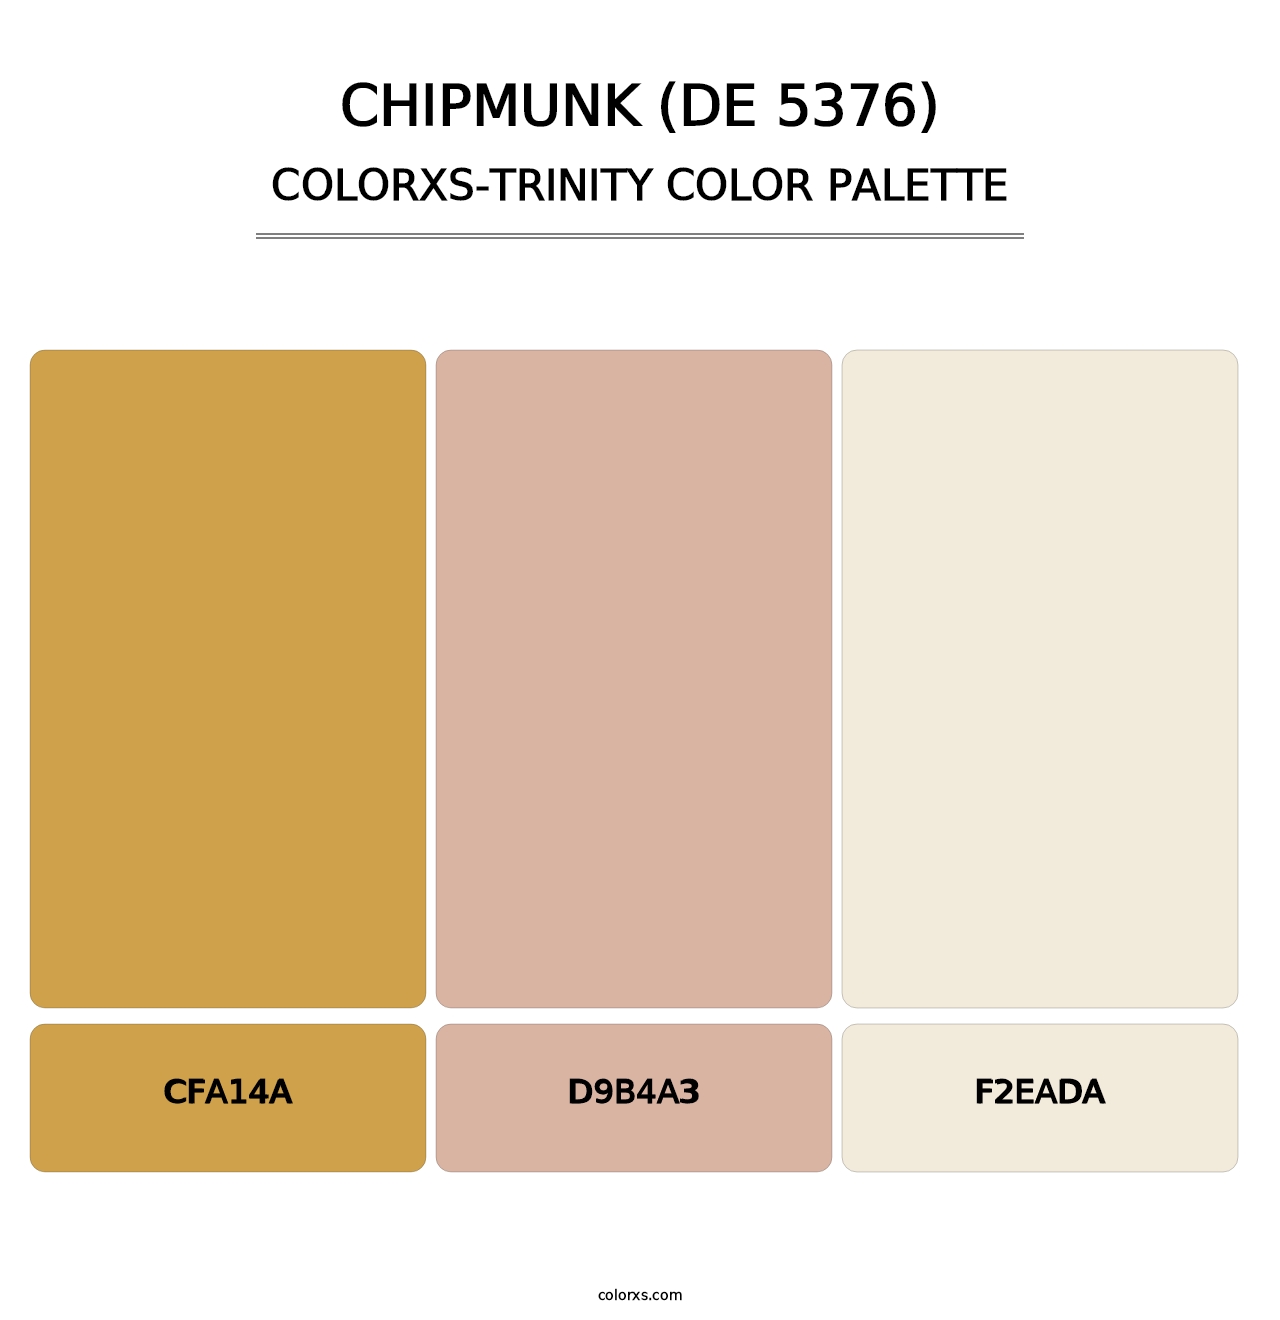 Chipmunk (DE 5376) - Colorxs Trinity Palette